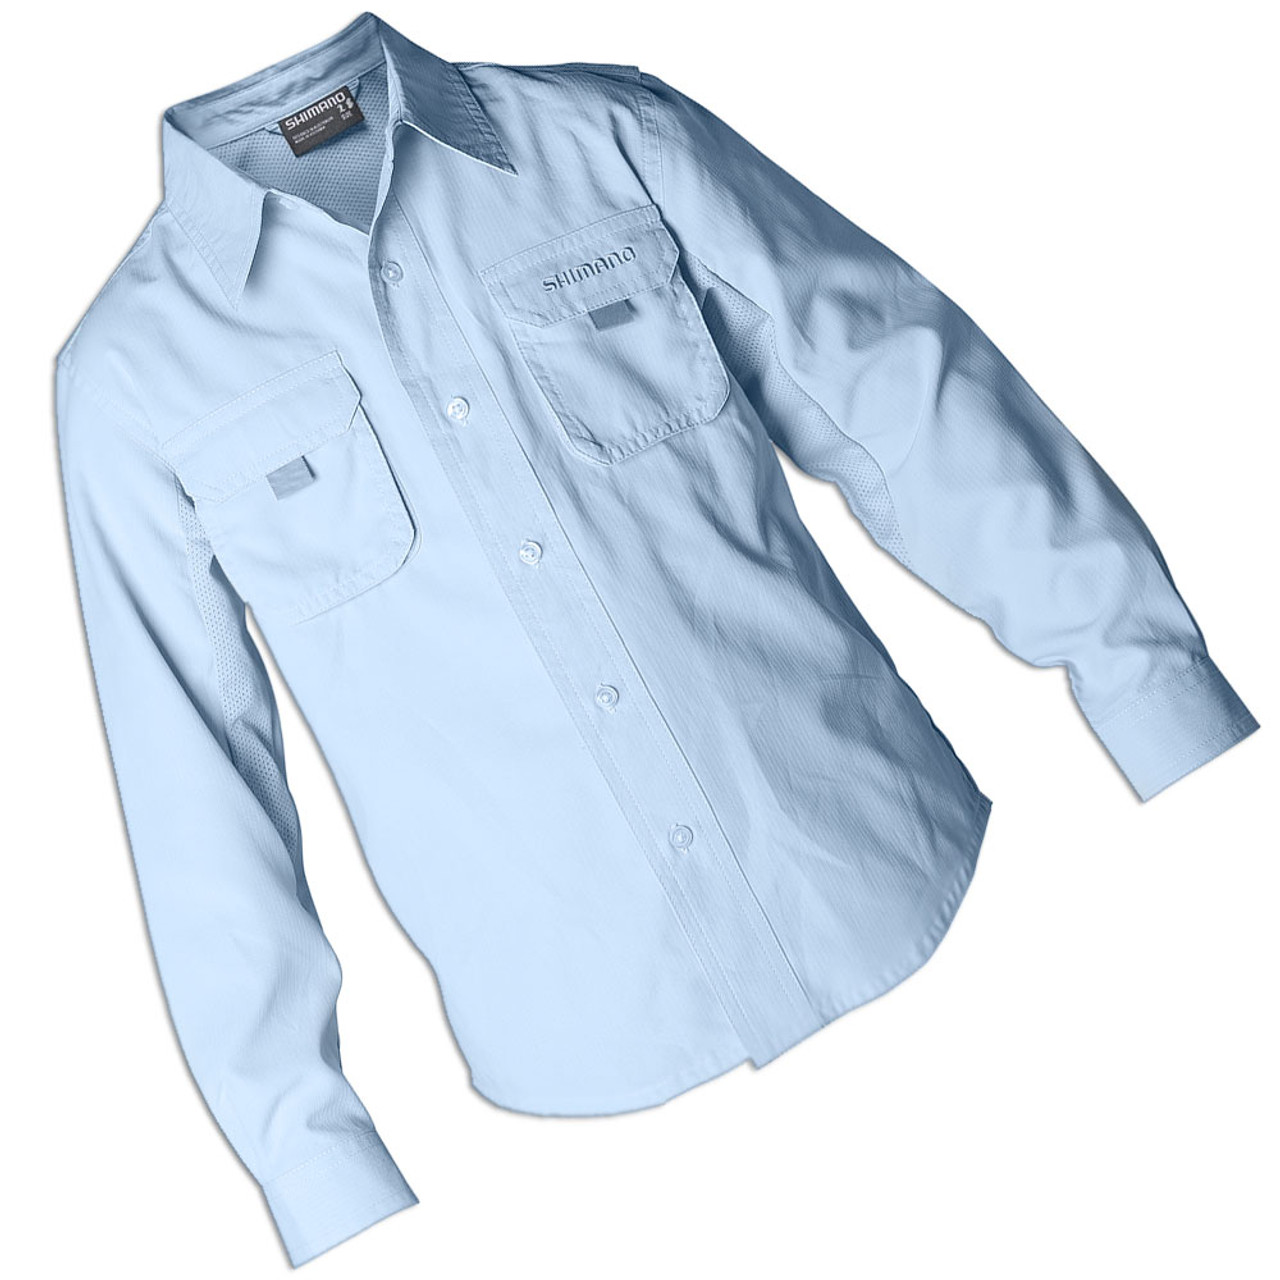 Shimano Vented Shirt - Oatmeal Long Sleeve